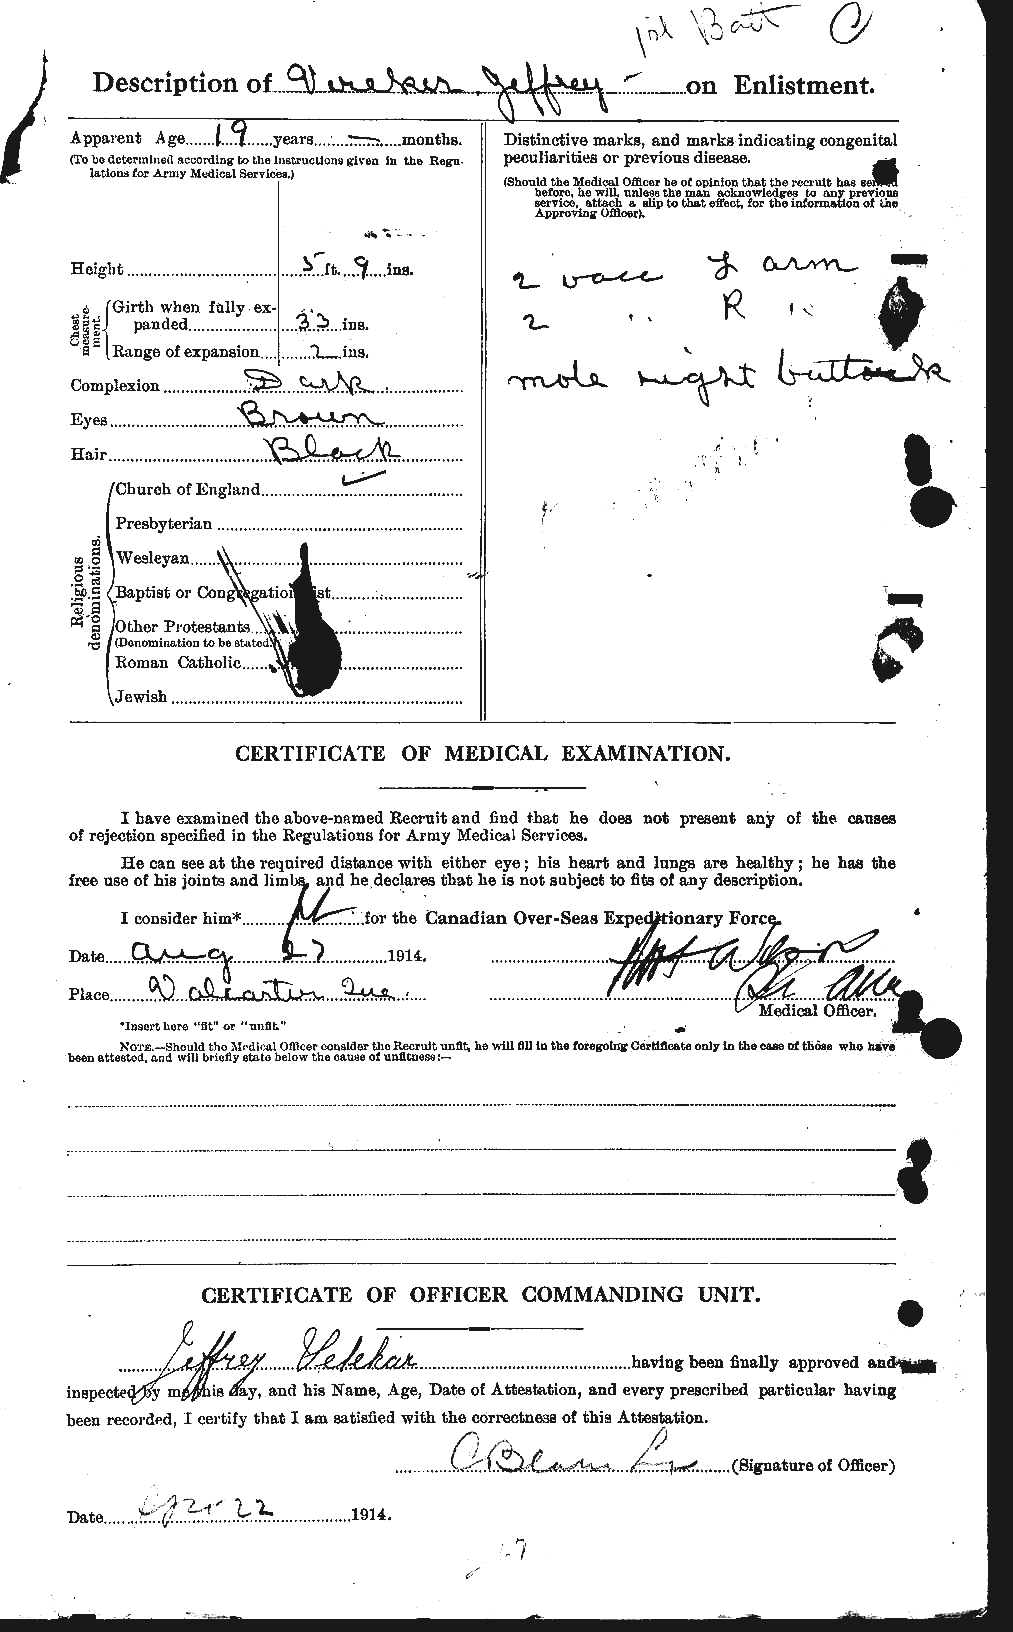 Dossiers du Personnel de la Première Guerre mondiale - CEC 649445b